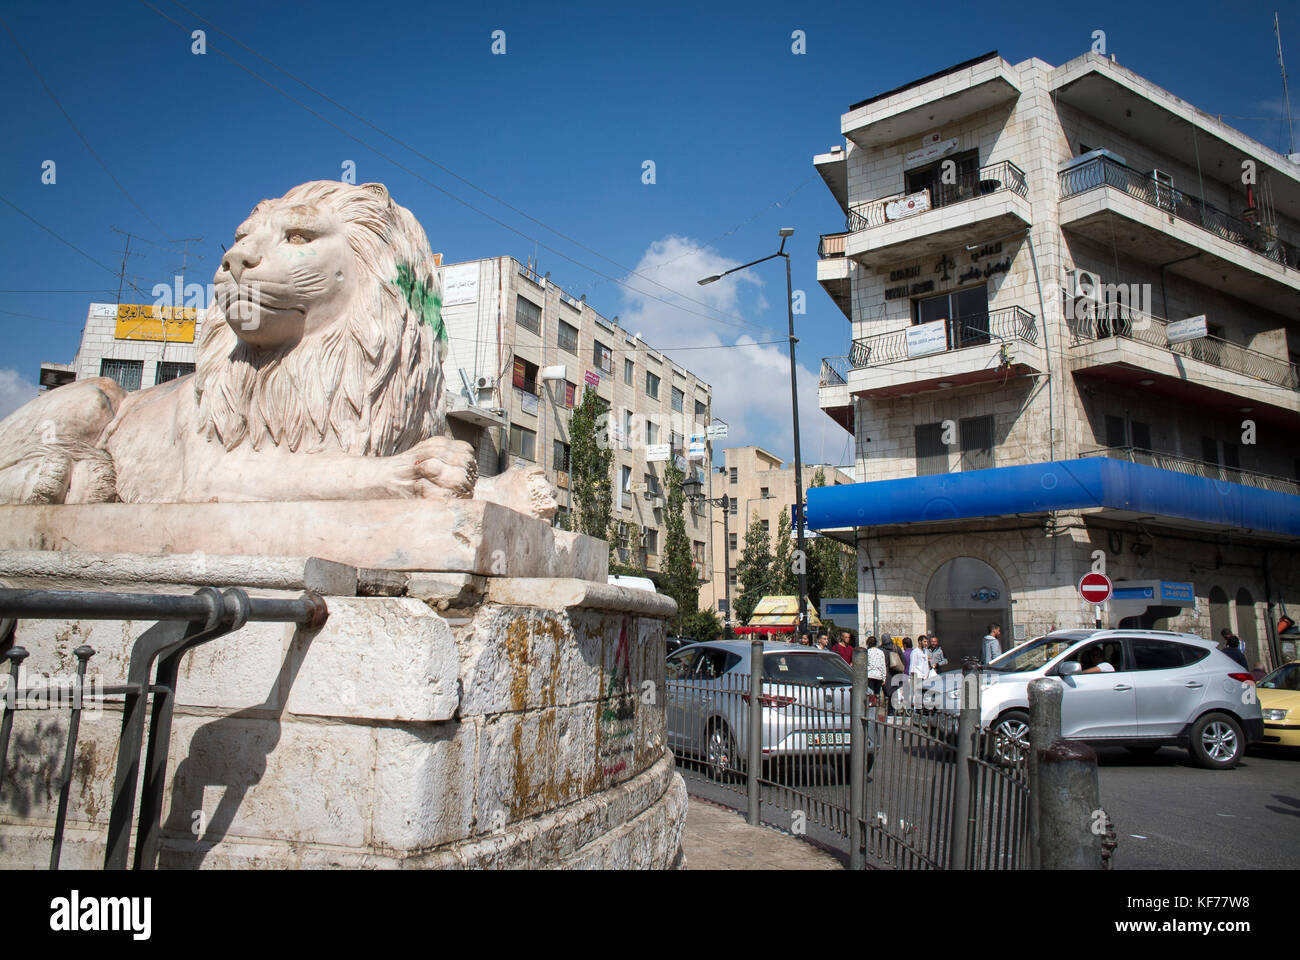 Al-Manara Square in Ramallah, Palestine Stock Photo